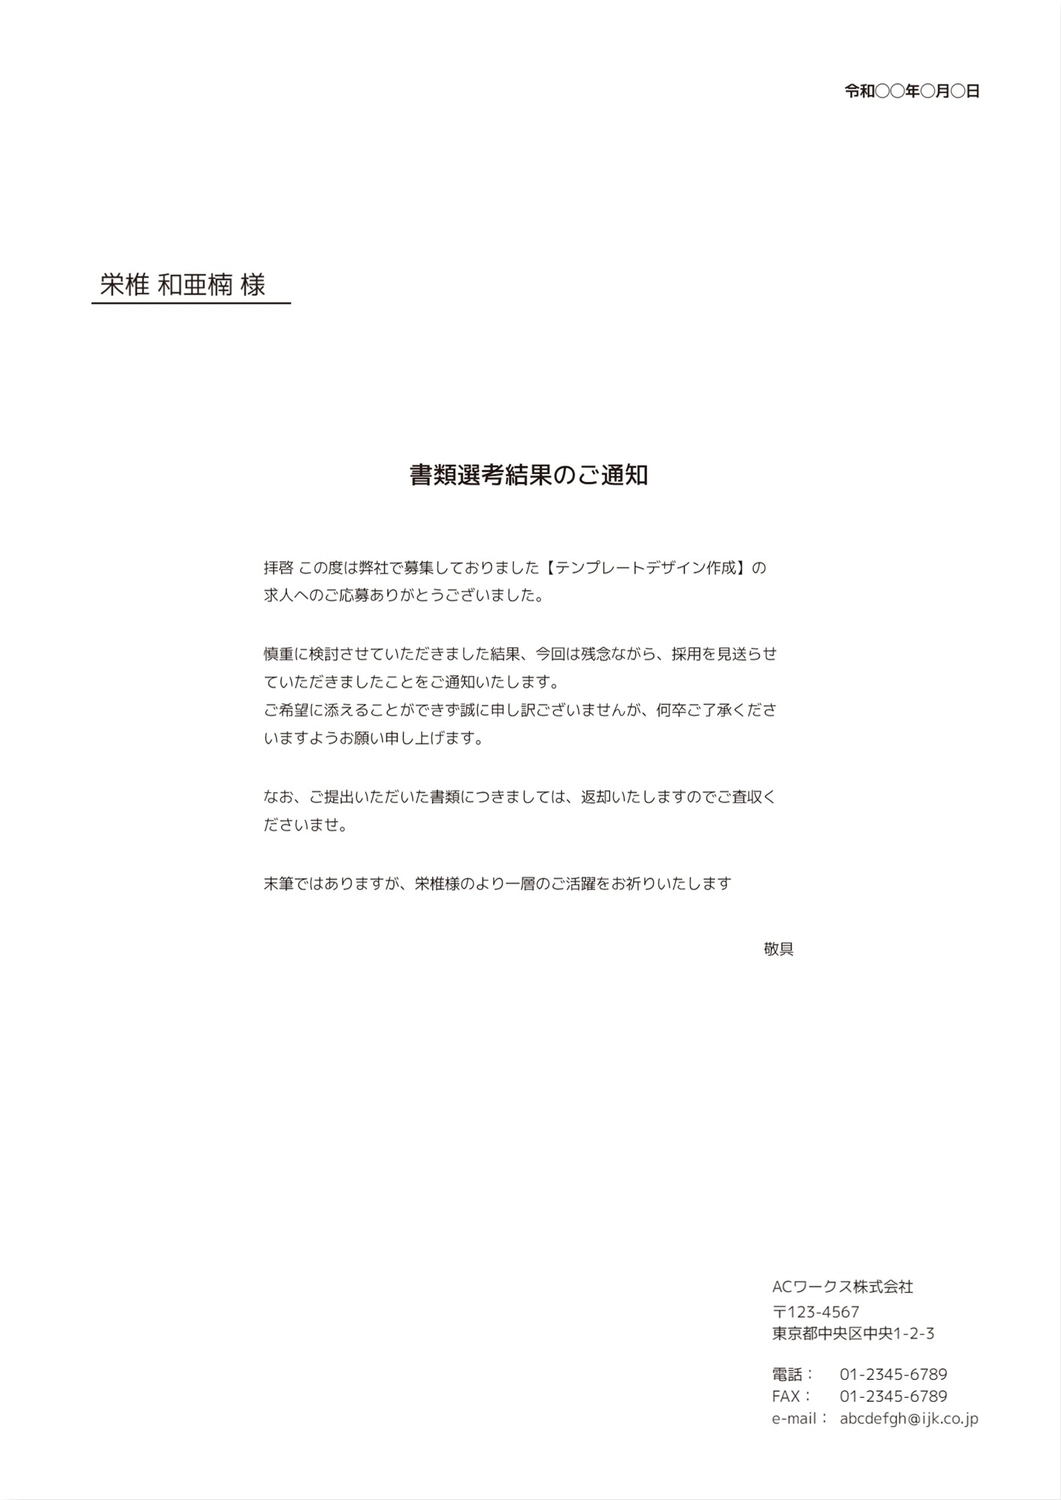 書類選考結果のご通知（見送り・不採用）, Điện thoại, nền trắng, người gửi, Tài liệu A4 mẫu